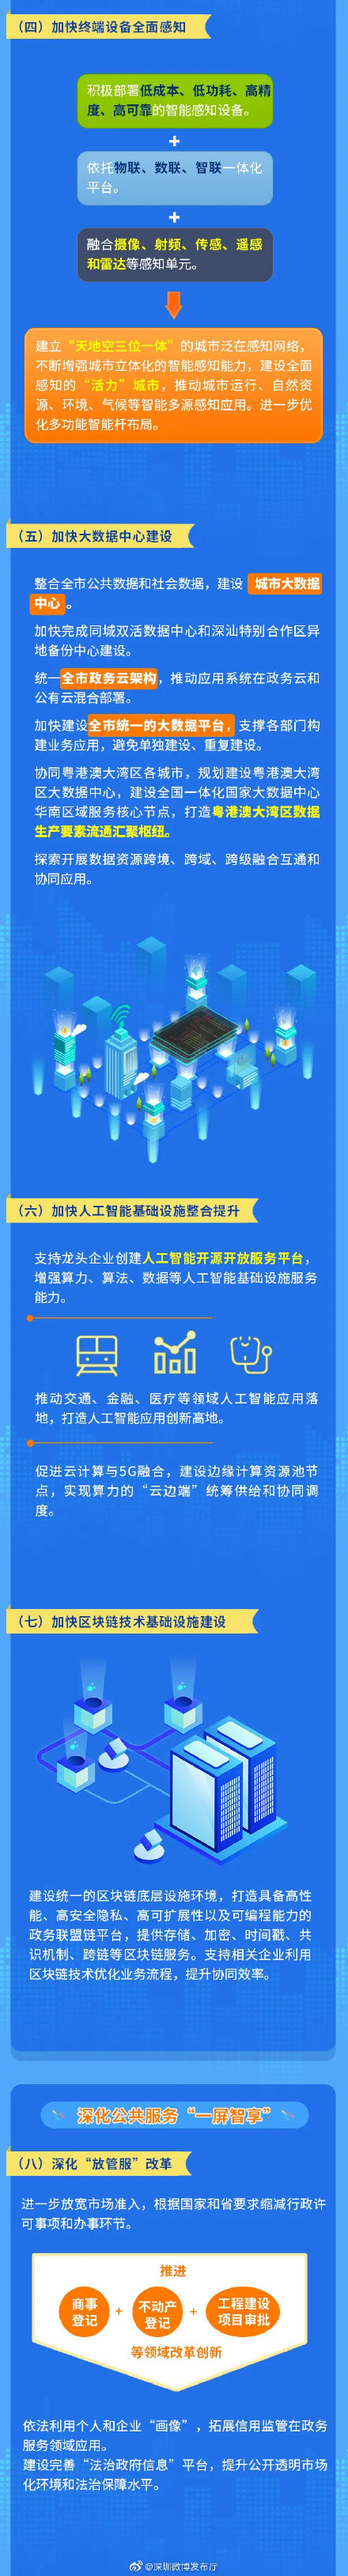 图解《深圳市人民政府关于加快智慧城市和数字政府建设的若干意见》